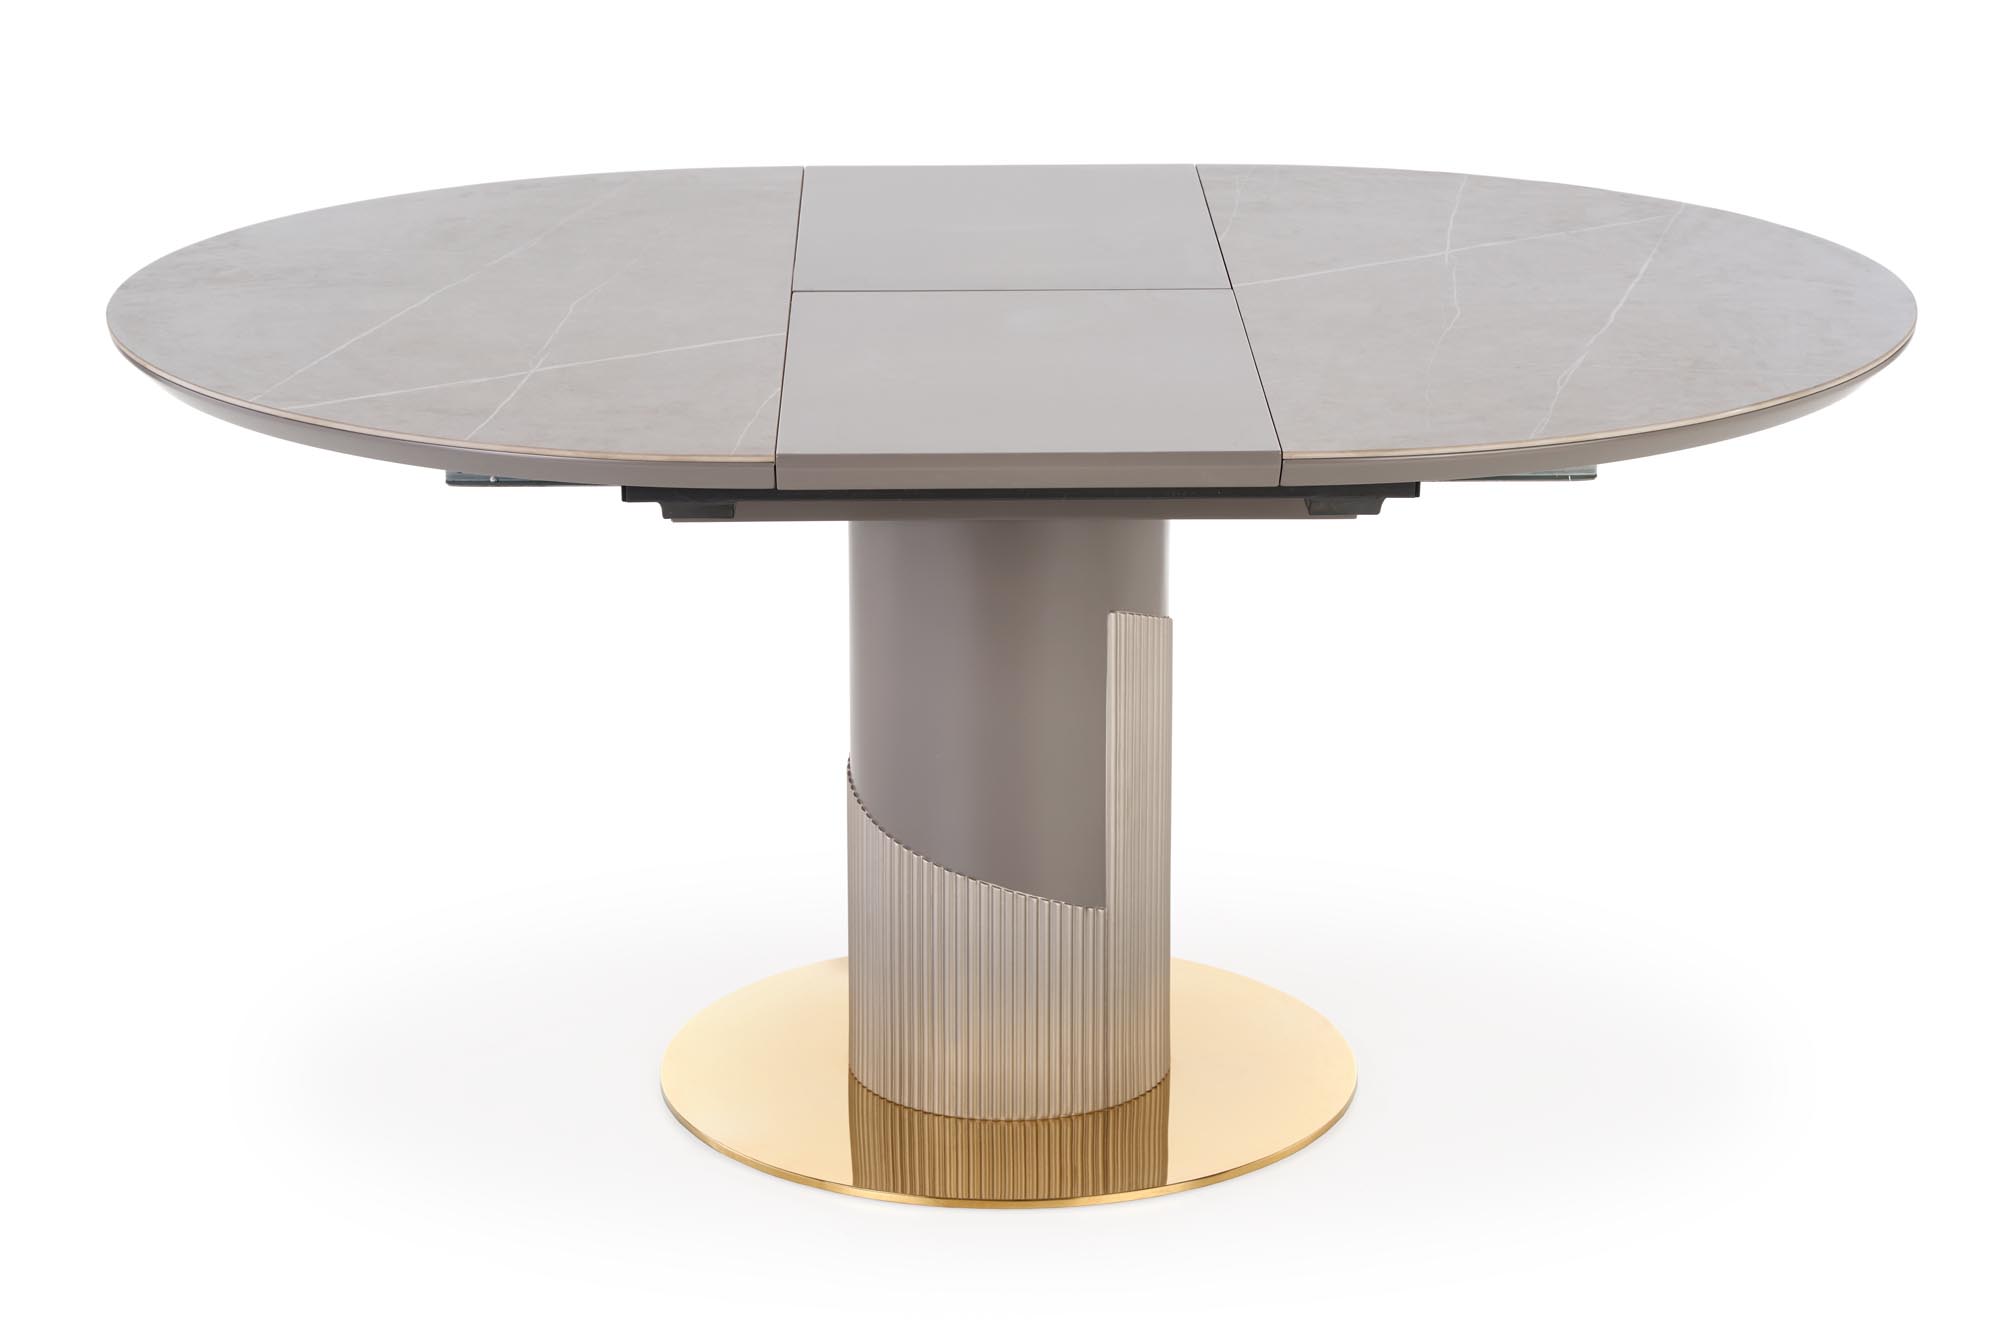 MUSCAT Stůl rozkládací Deska - Popelový mramor, noga - jasný popel / Žlutý muscat stůl rozkládací Deska - Popelový mramor, noga - jasný popel / Žlutý